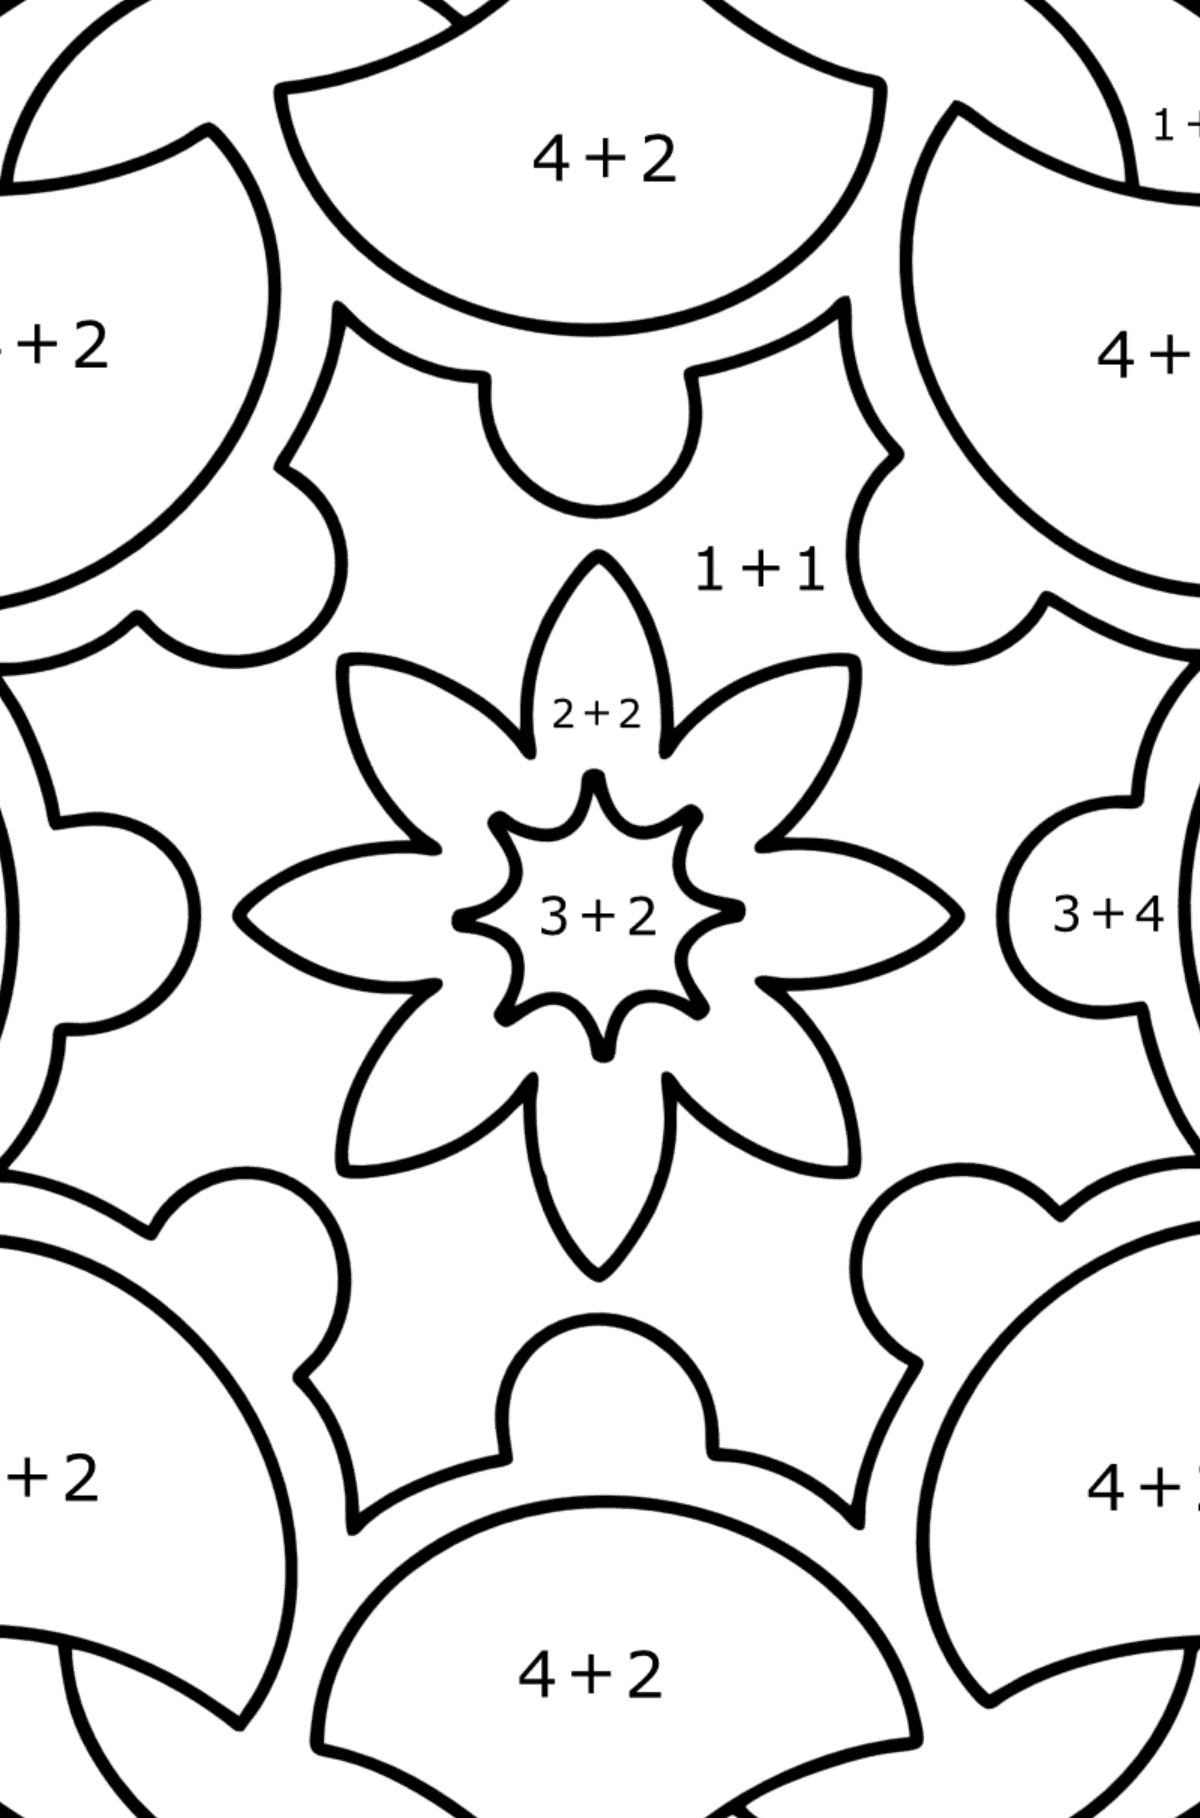 Omalovánka Mandala 7 - Matematická Omalovánka - Sčítání pro děti